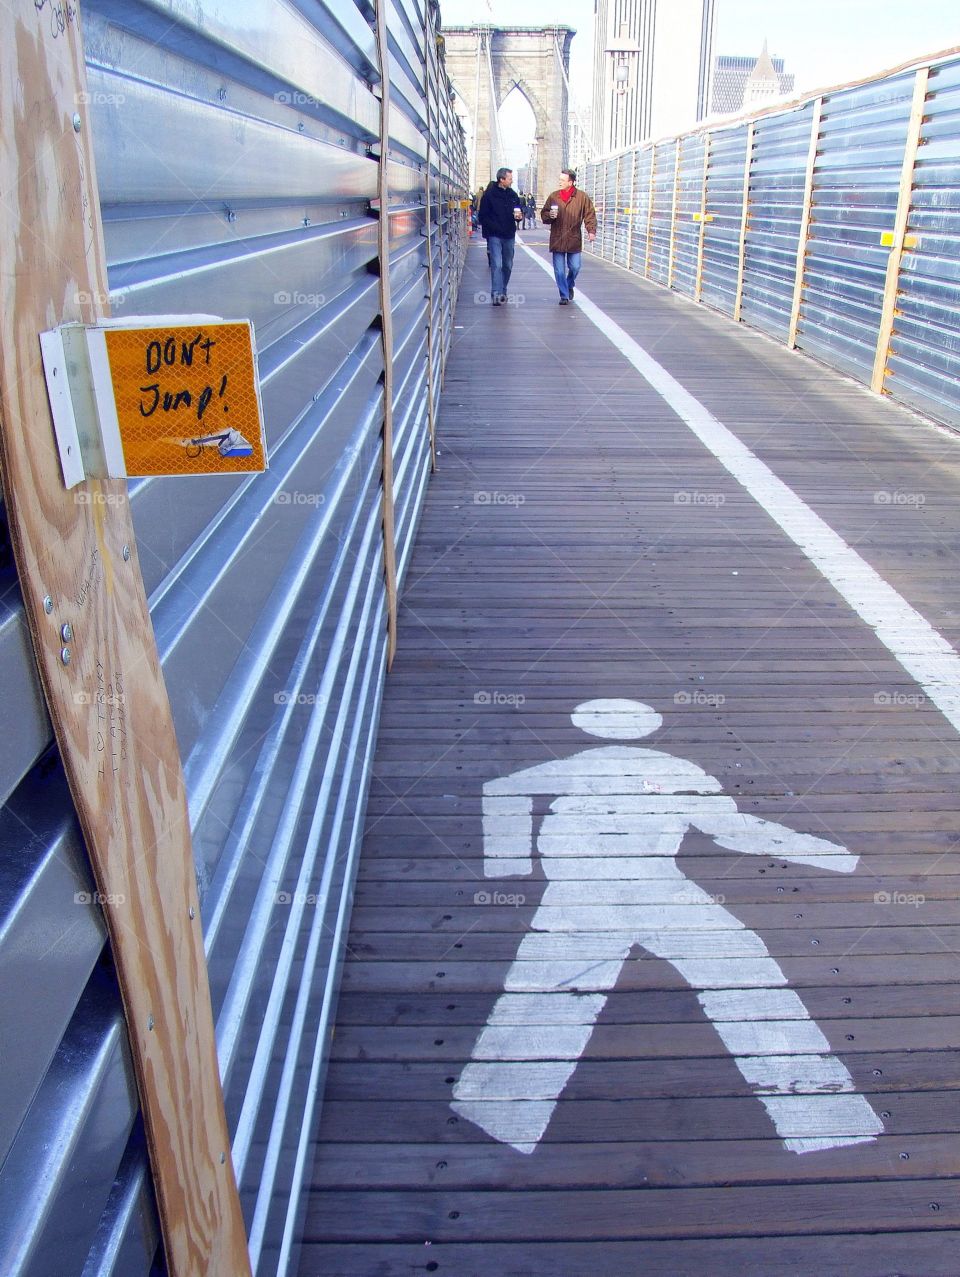 Don't jump!. Brooklyn bridge 